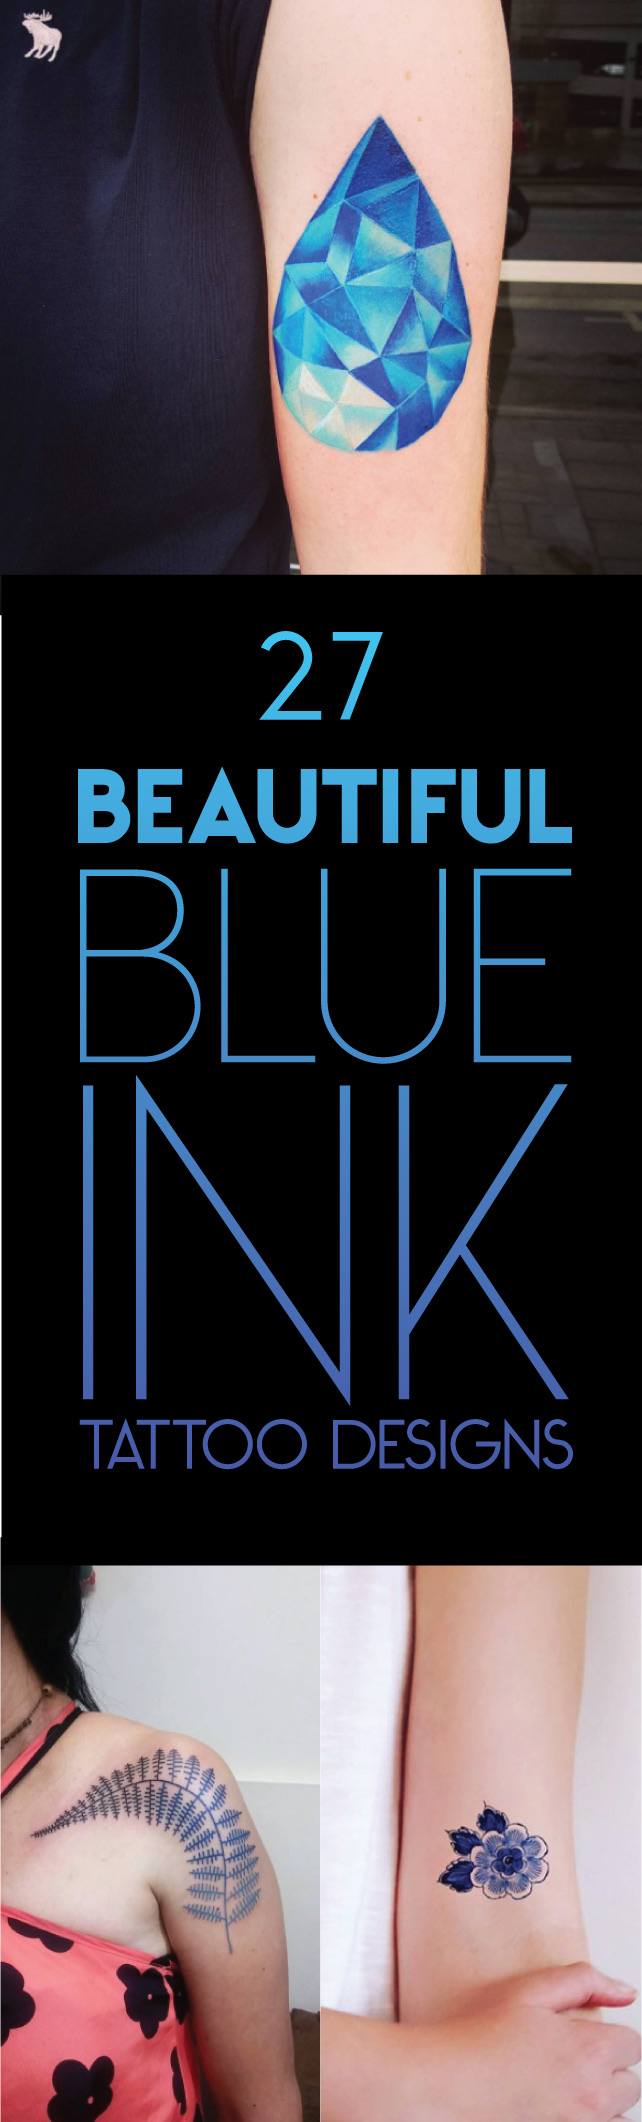 27 Beautiful Blue Ink Tattoo Designs | TattooBlend